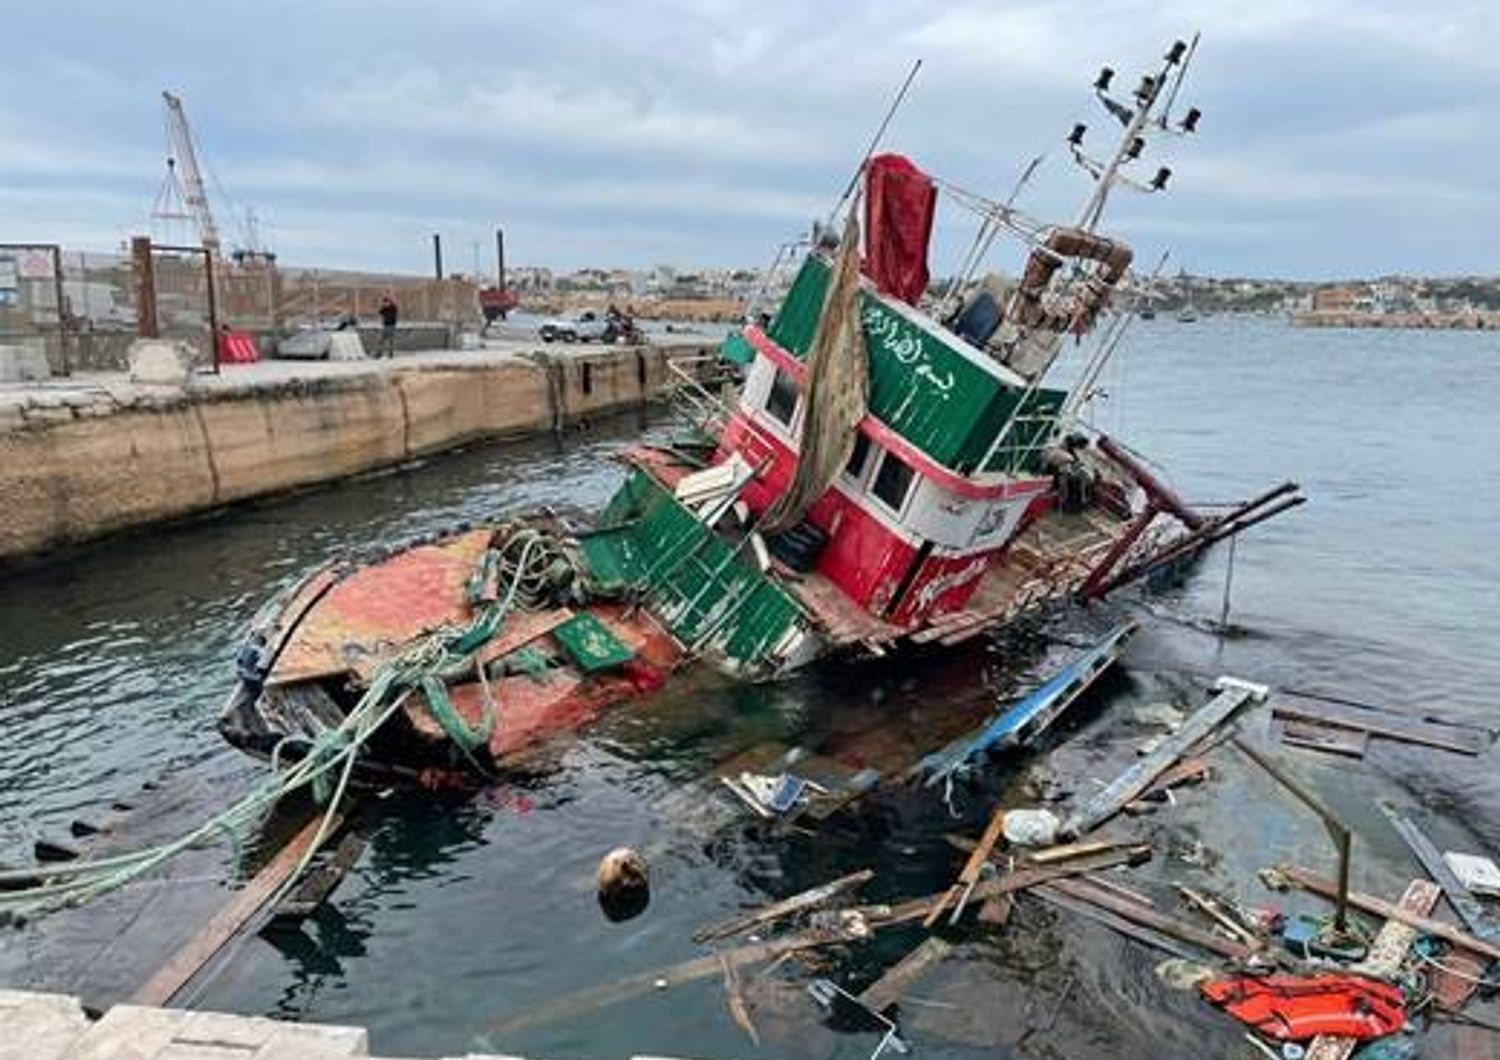 lampedusa distrugge barconi migranti